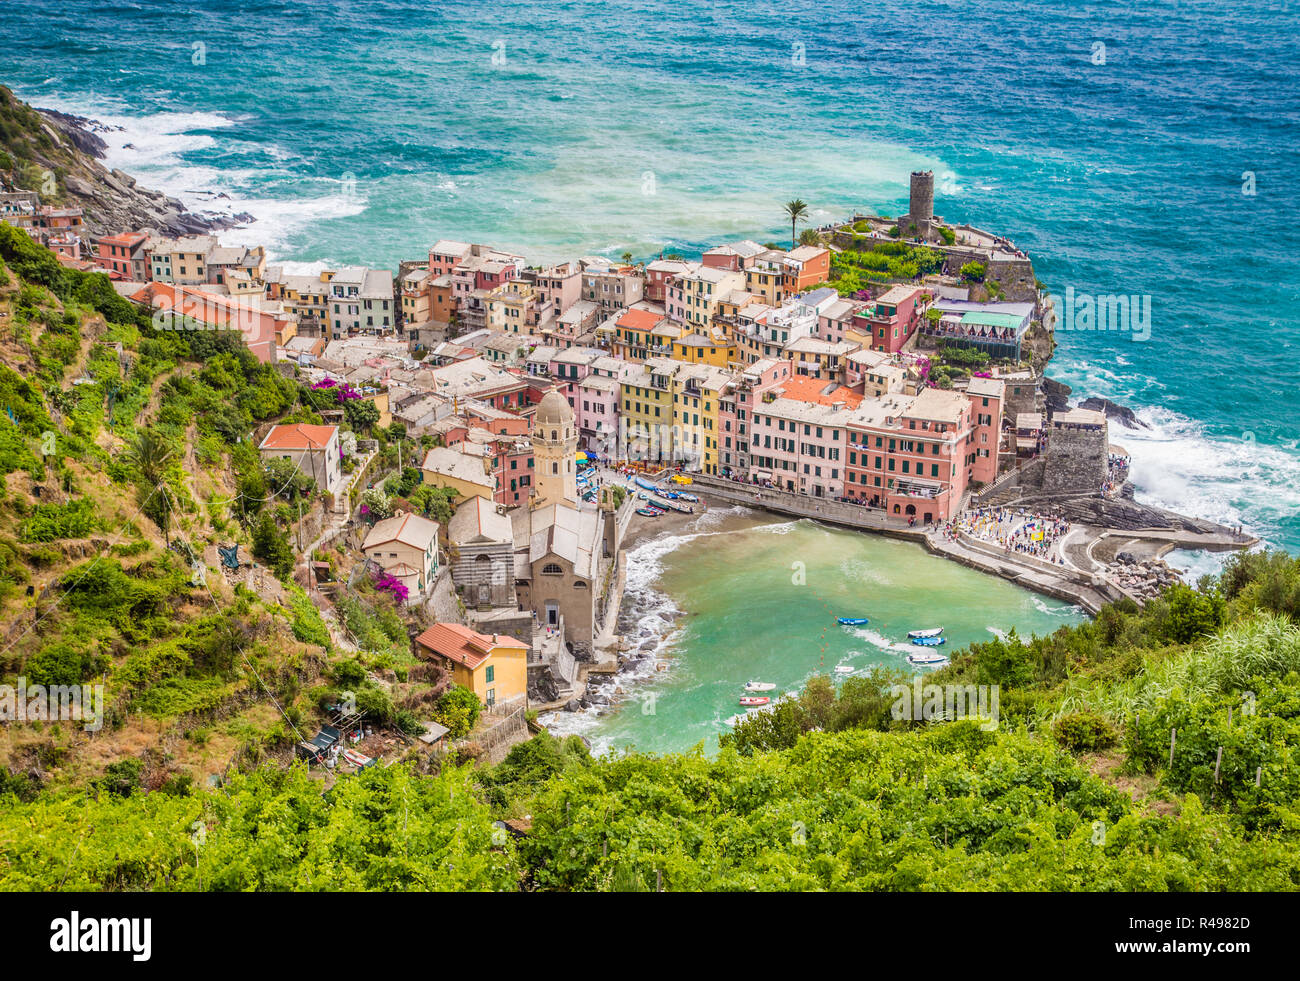 Bellissima vista di Vernazza, uno dei cinque famosi villaggi di pescatori delle Cinque Terre, Liguria, Italia Foto Stock